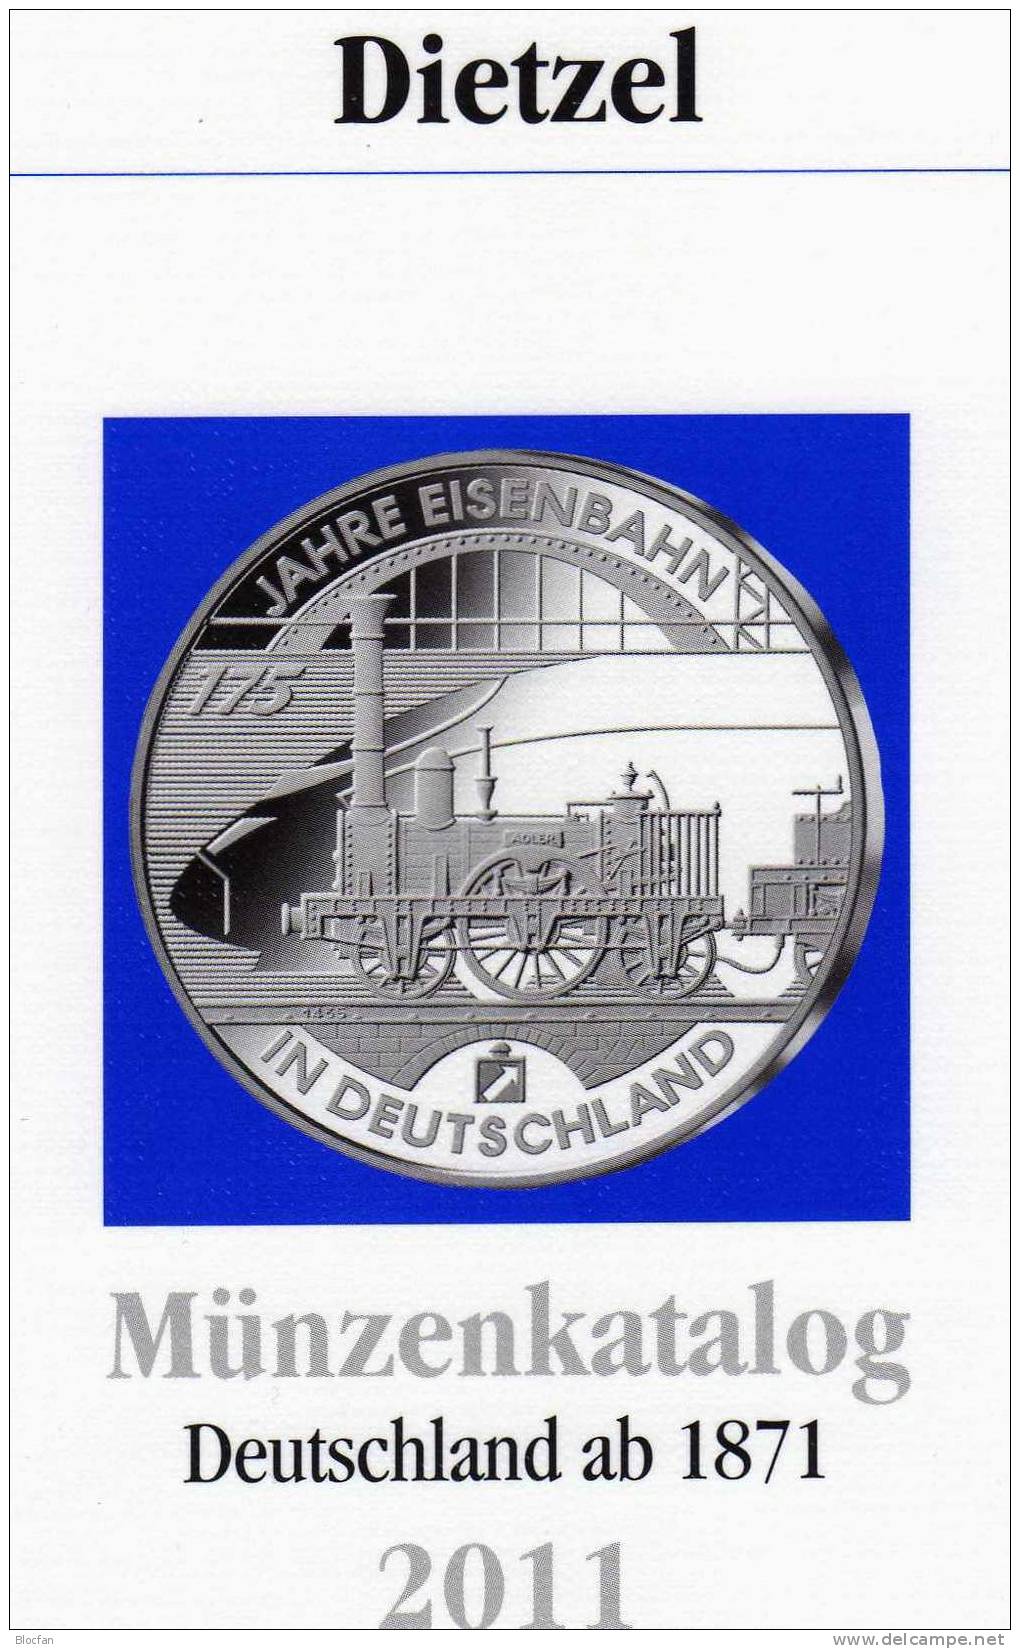 DIETZEL Münzen-Katalog Deutschland 2011 Neu 6€ Das Preiswerte Nachschlagwerk Für Münzen Ab 1871 Und Numisbriefe - Kataloge